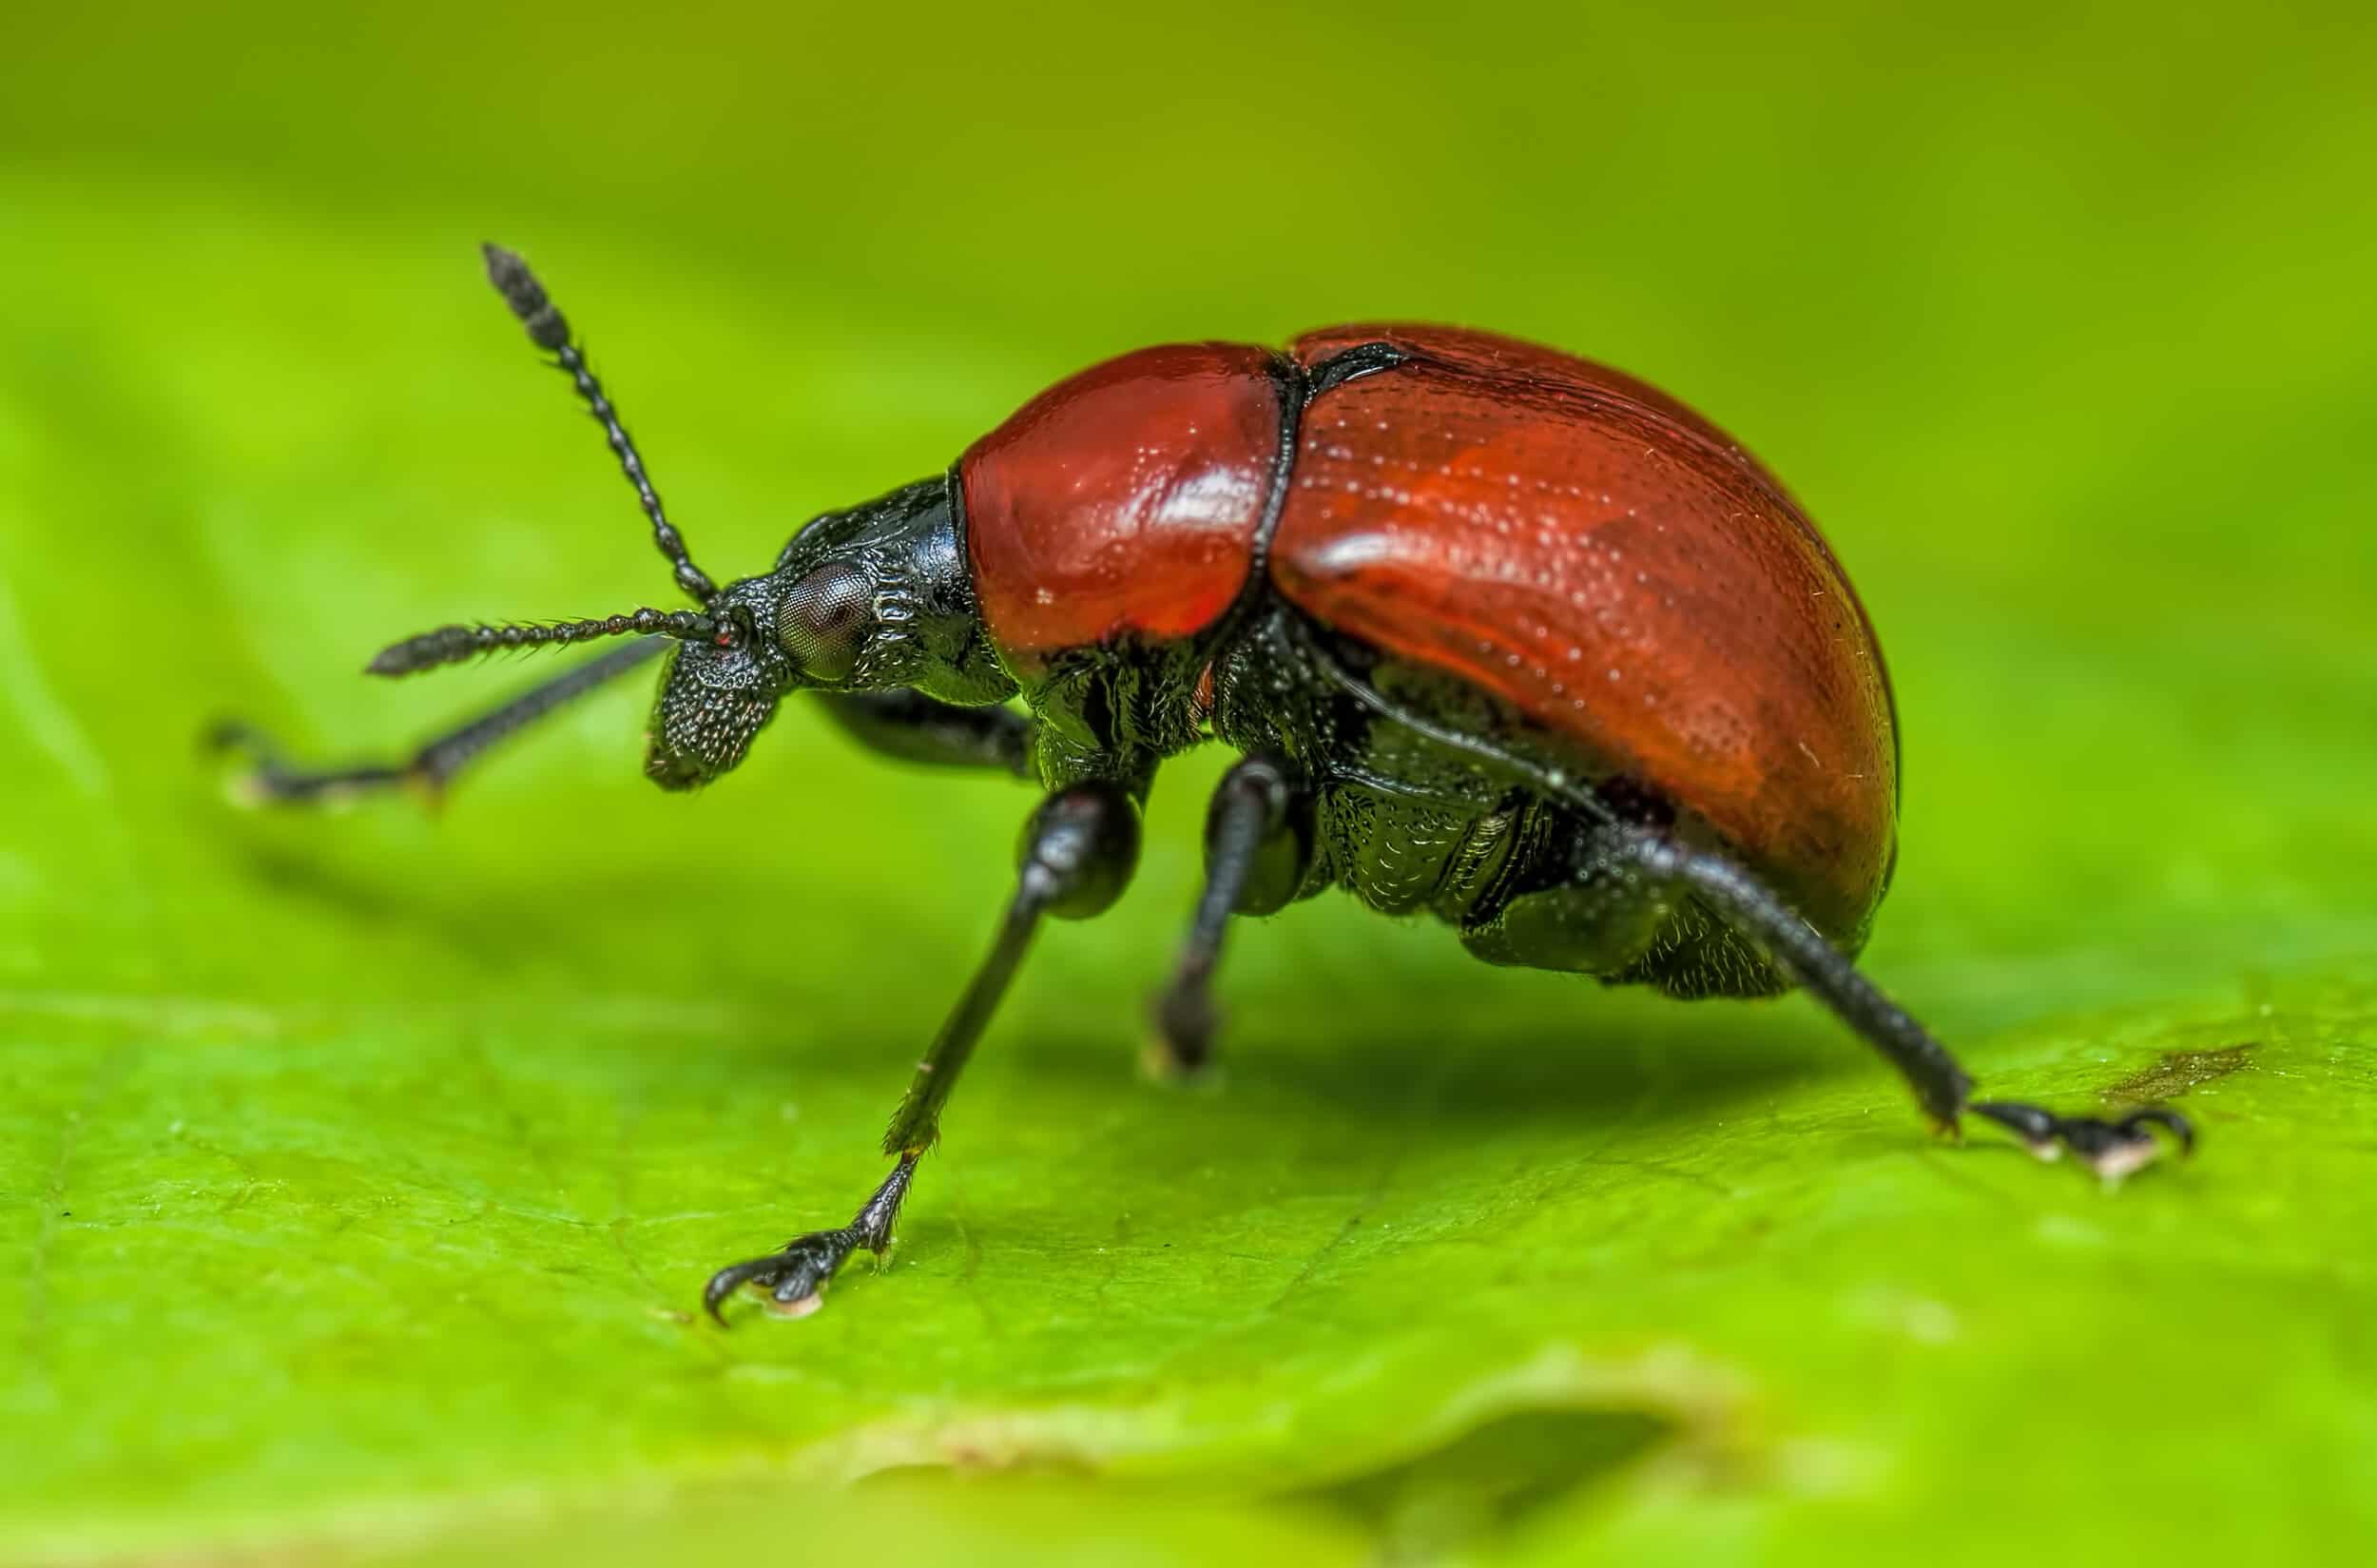 Red Beetle on a leaf